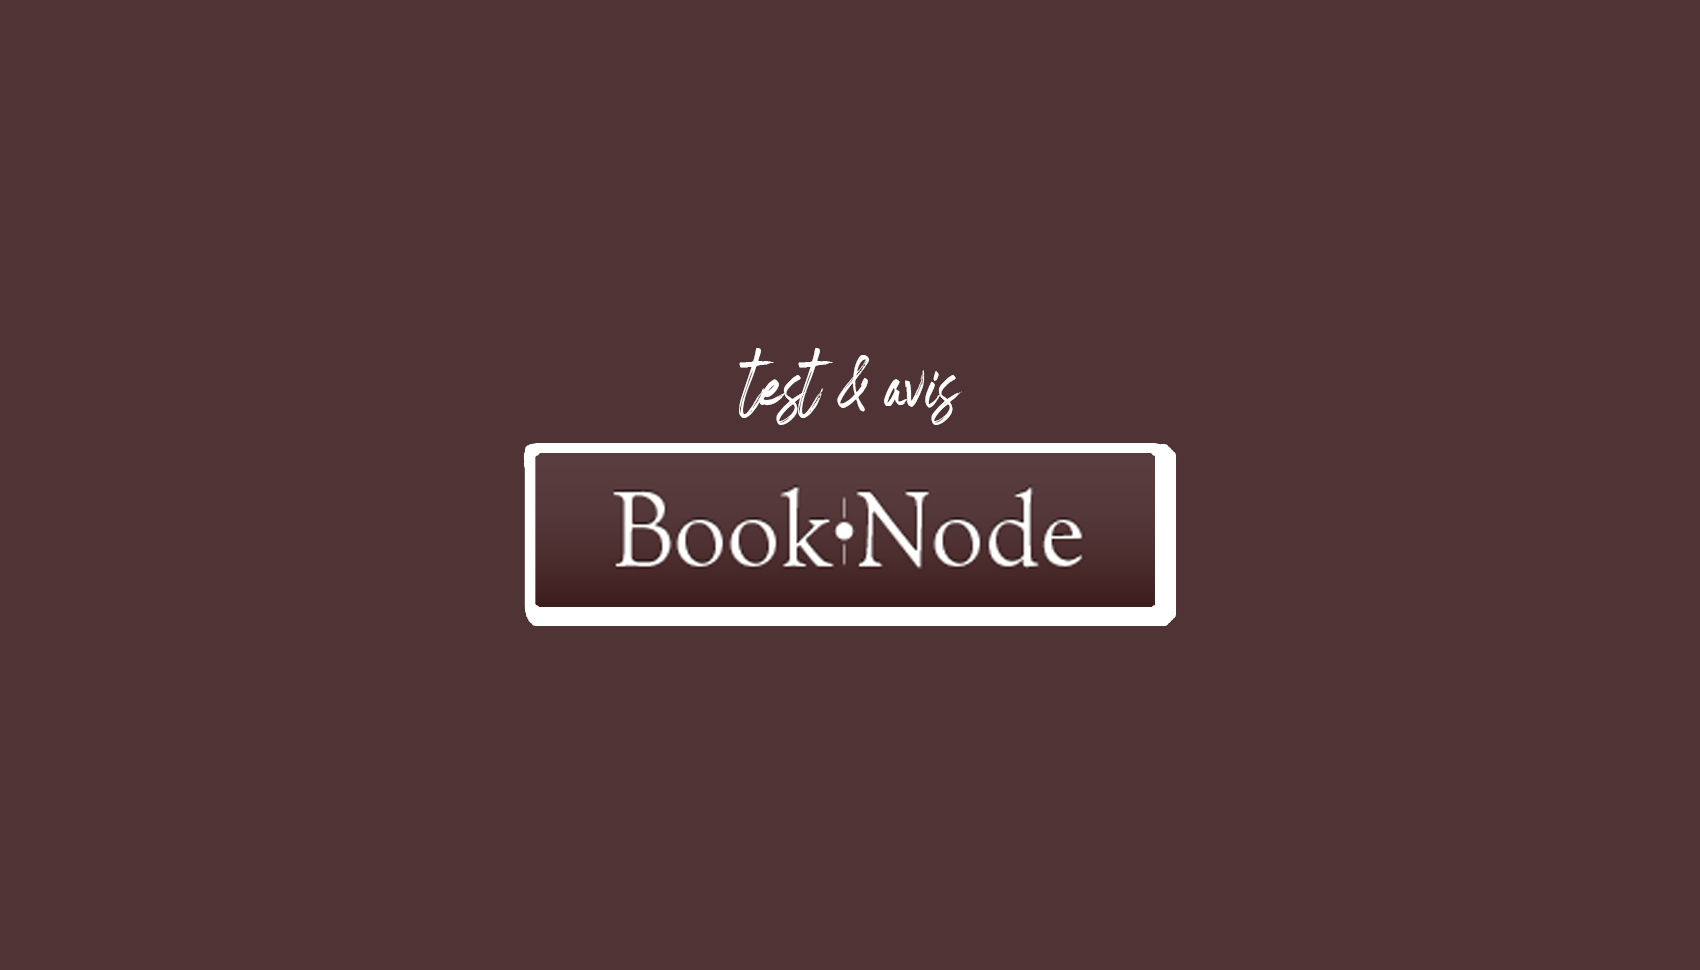 Booknode- စာဖတ်ဝါသနာပါသူများအတွက် အခမဲ့ Virtual Library (ပြန်လည်သုံးသပ်ခြင်းနှင့် စမ်းသပ်ခြင်း)